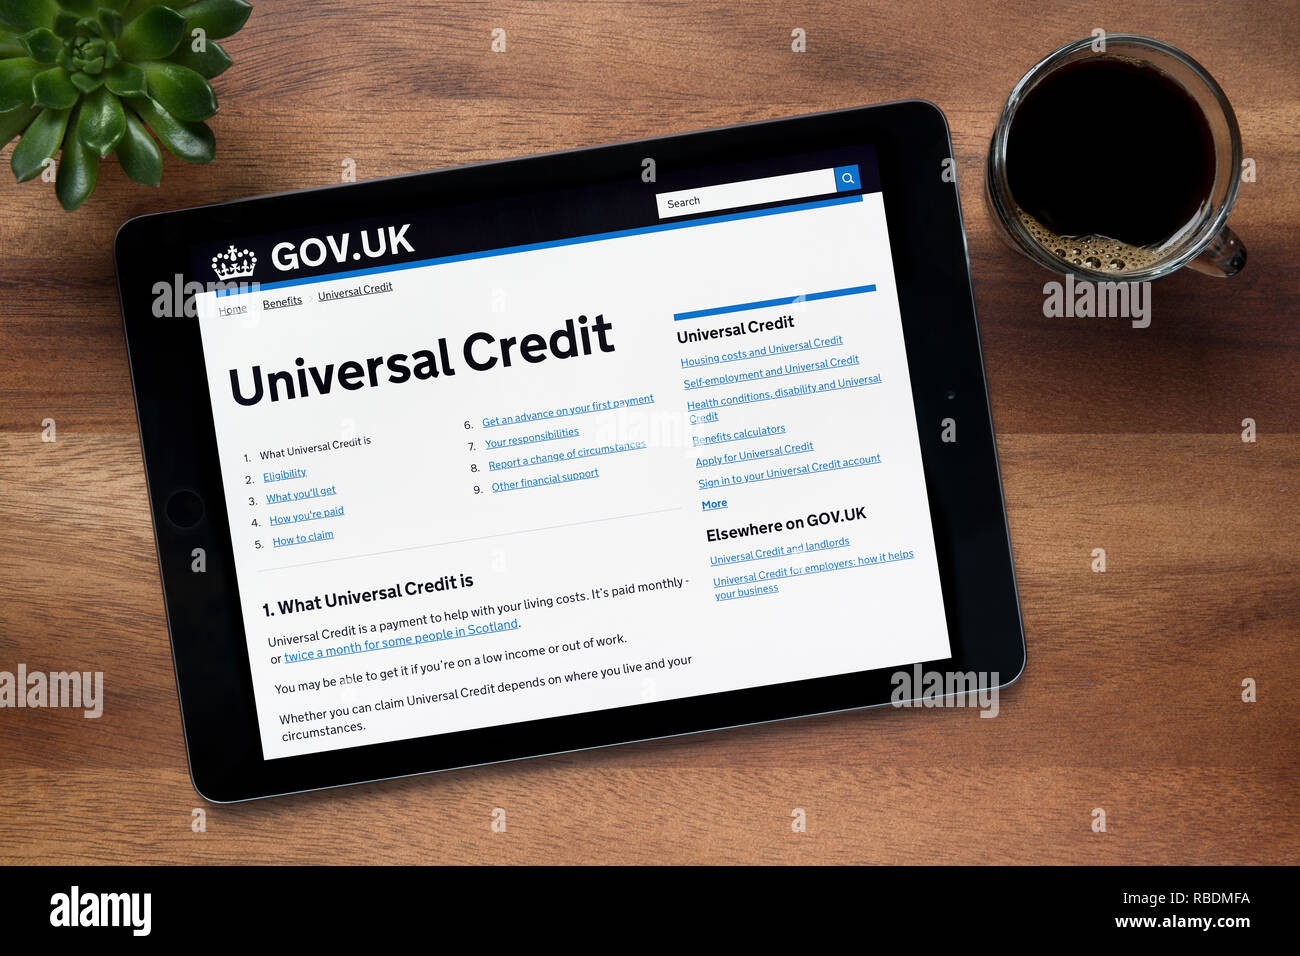 Le crédit universel section du site gov.uk est vu sur un iPad tablet, reposant sur une table en bois (usage éditorial uniquement). Banque D'Images